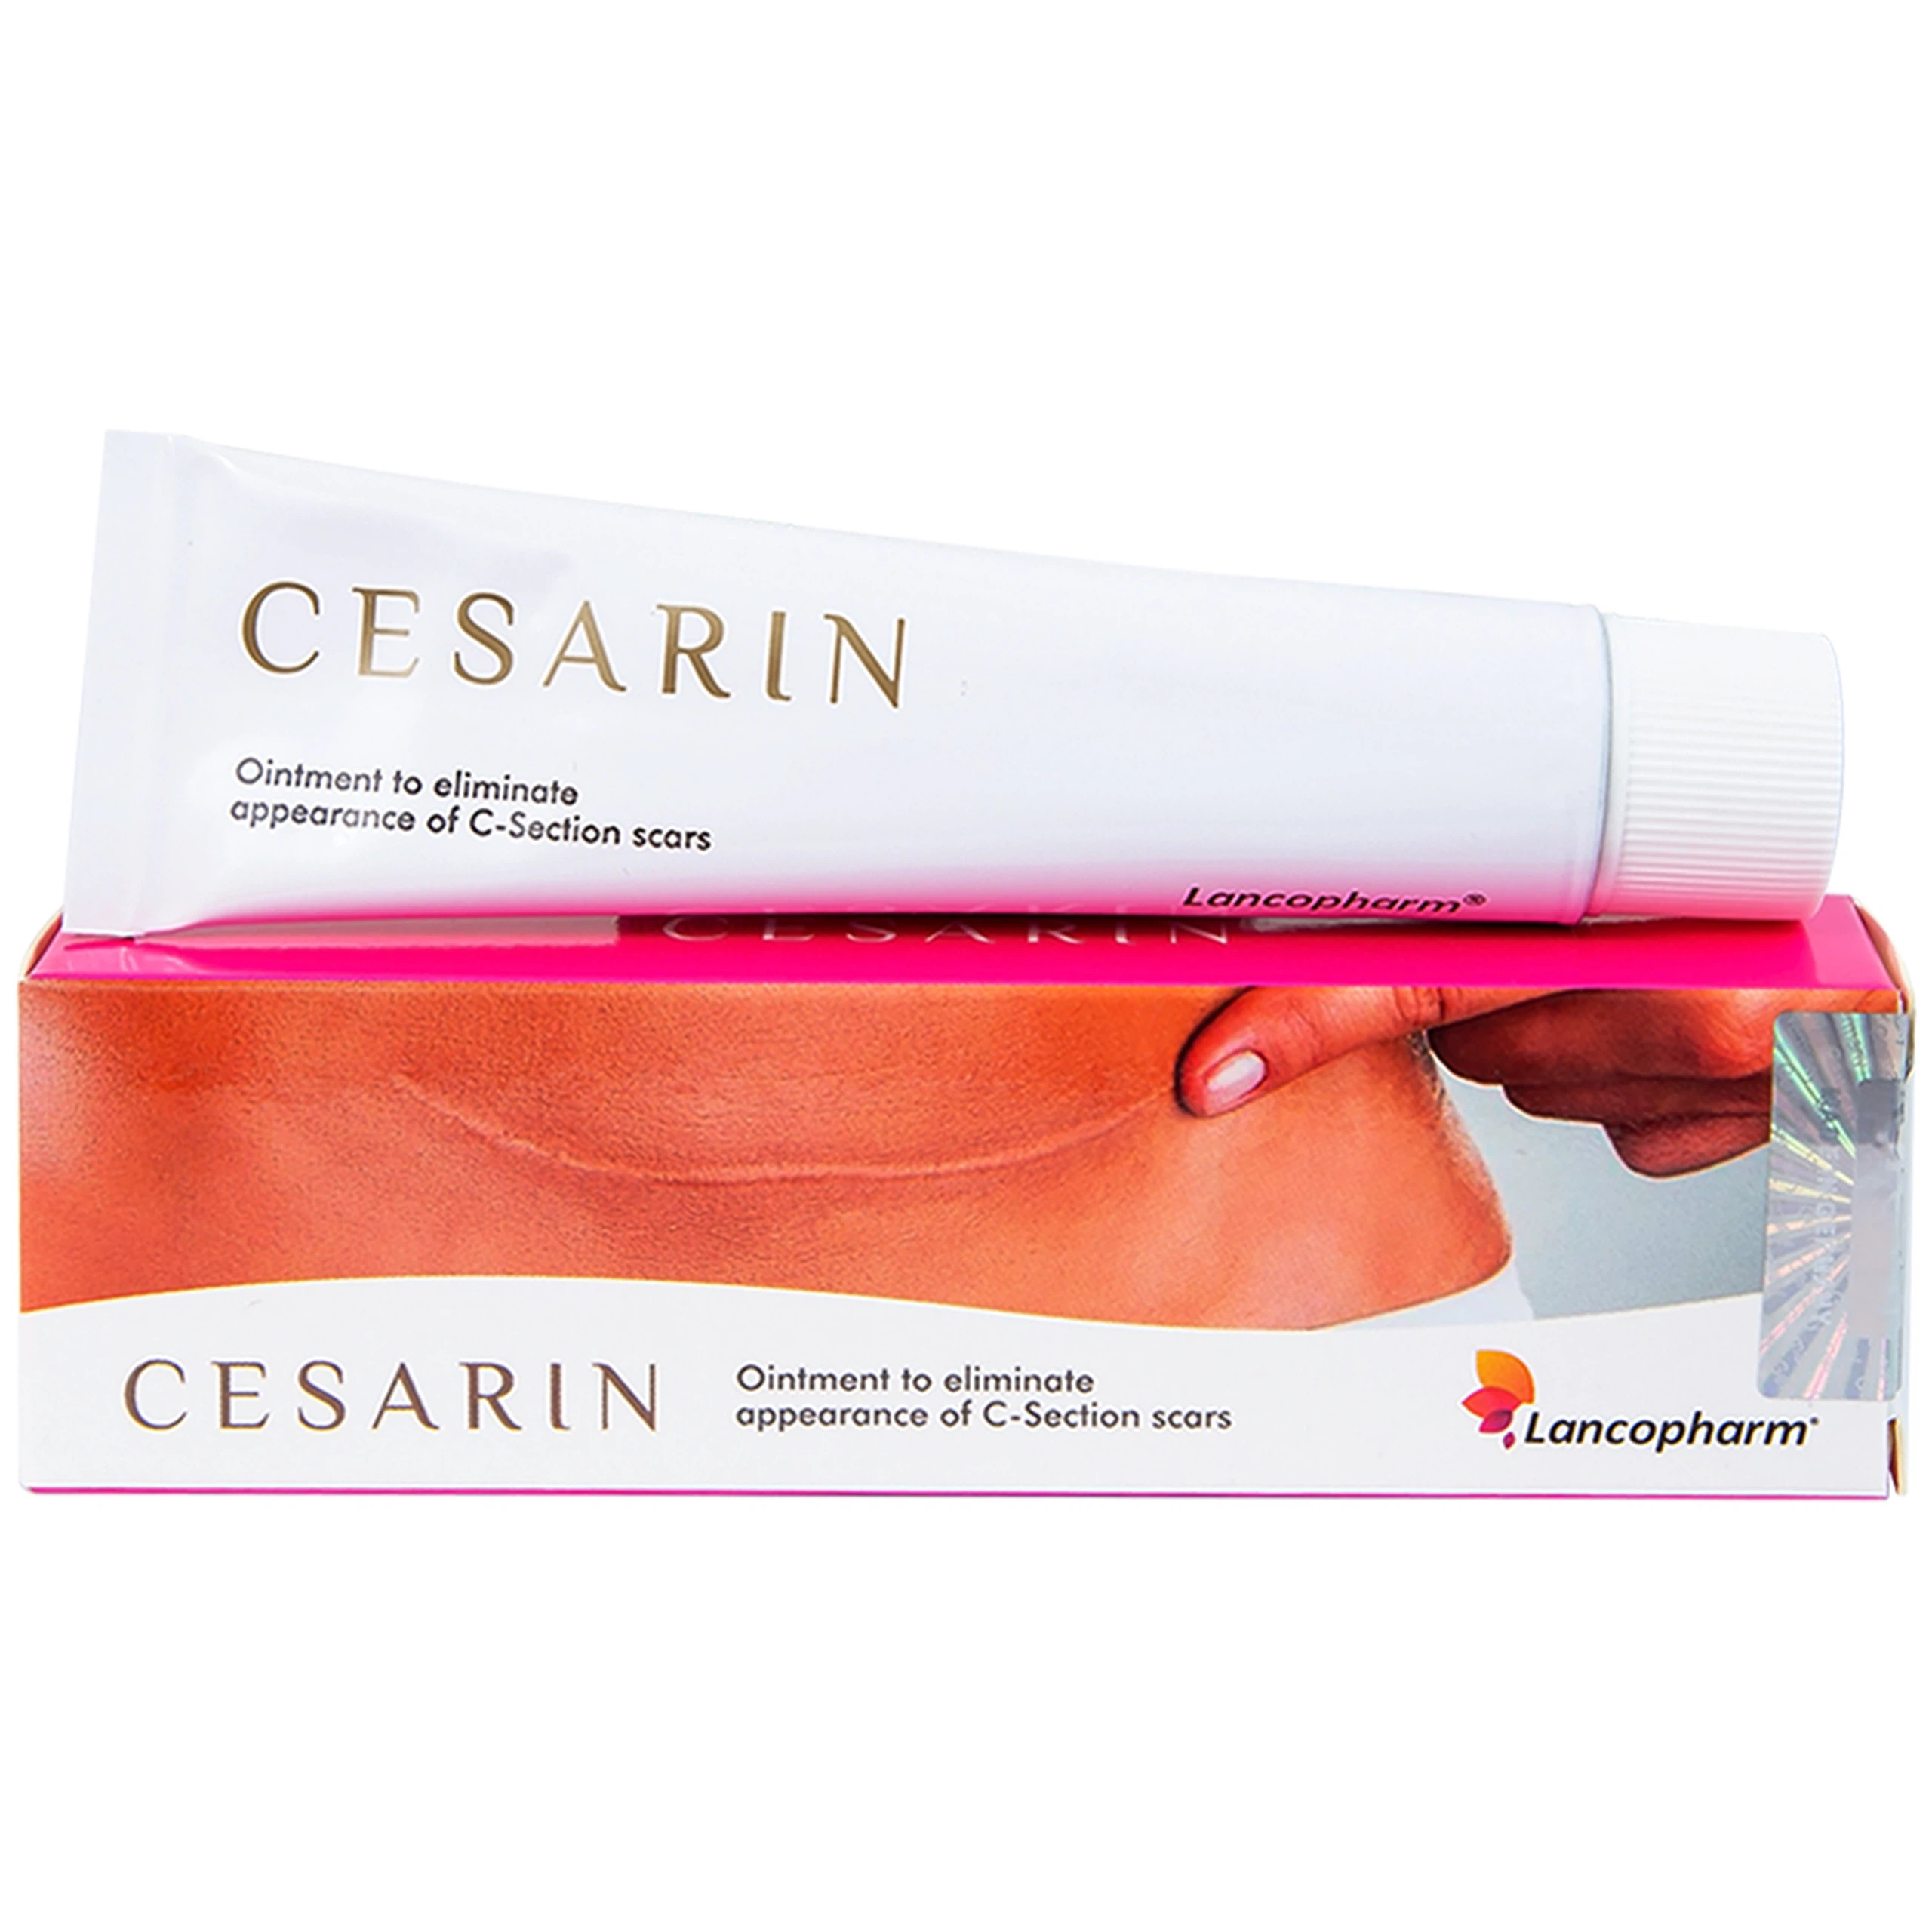 Kem Cesarin Ointment Lacopharm hỗ trợ làm mờ và làm mềm vết sẹo phẫu thuật (30g)